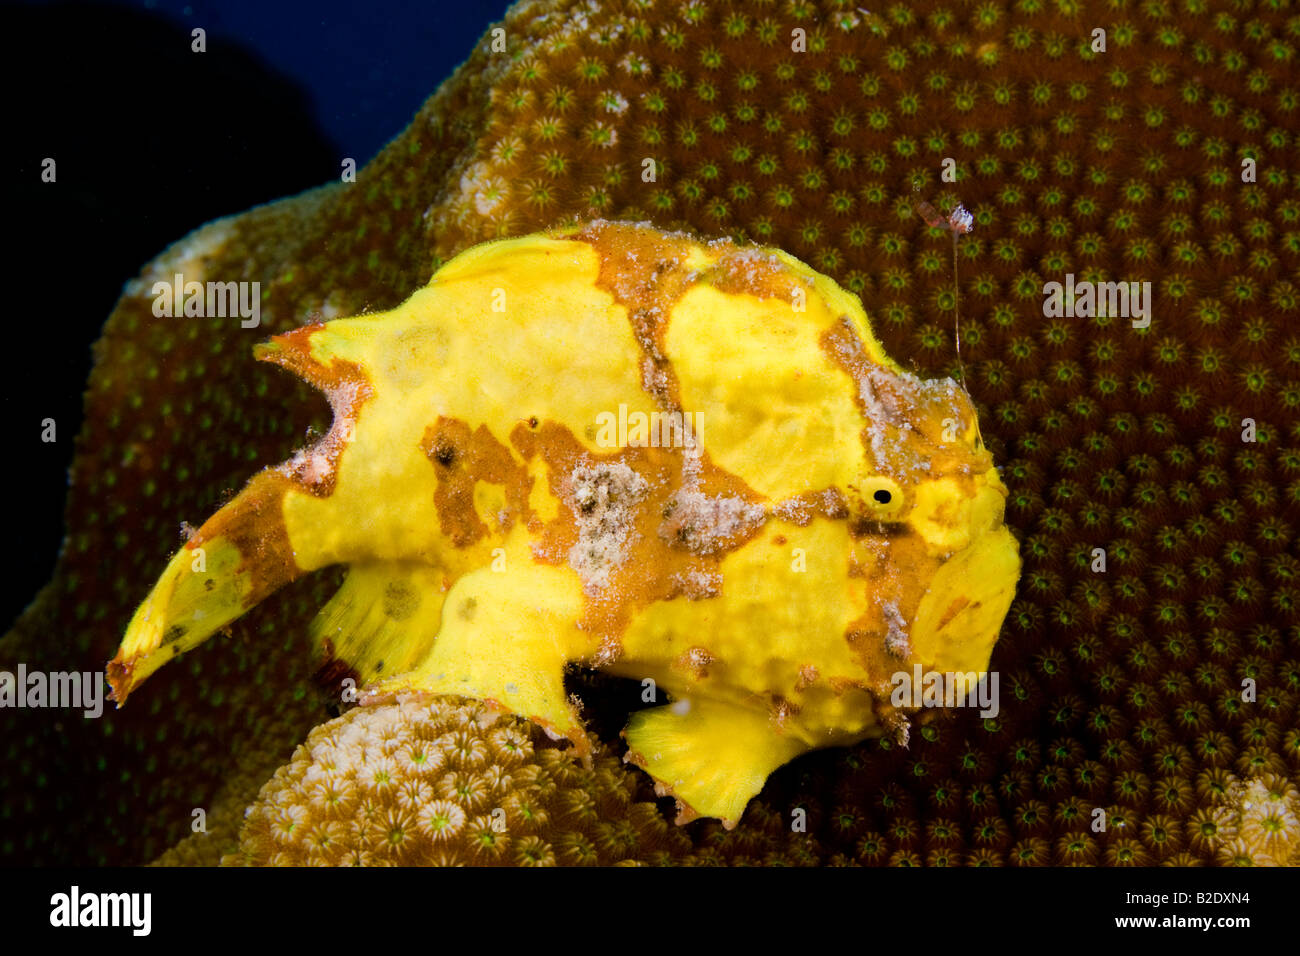 Ce poisson grenouille Antennarius multiocellatus longlure, est, à l'aide c'est 'lure' pour attirer les proies. Bonaire, des Caraïbes. Banque D'Images